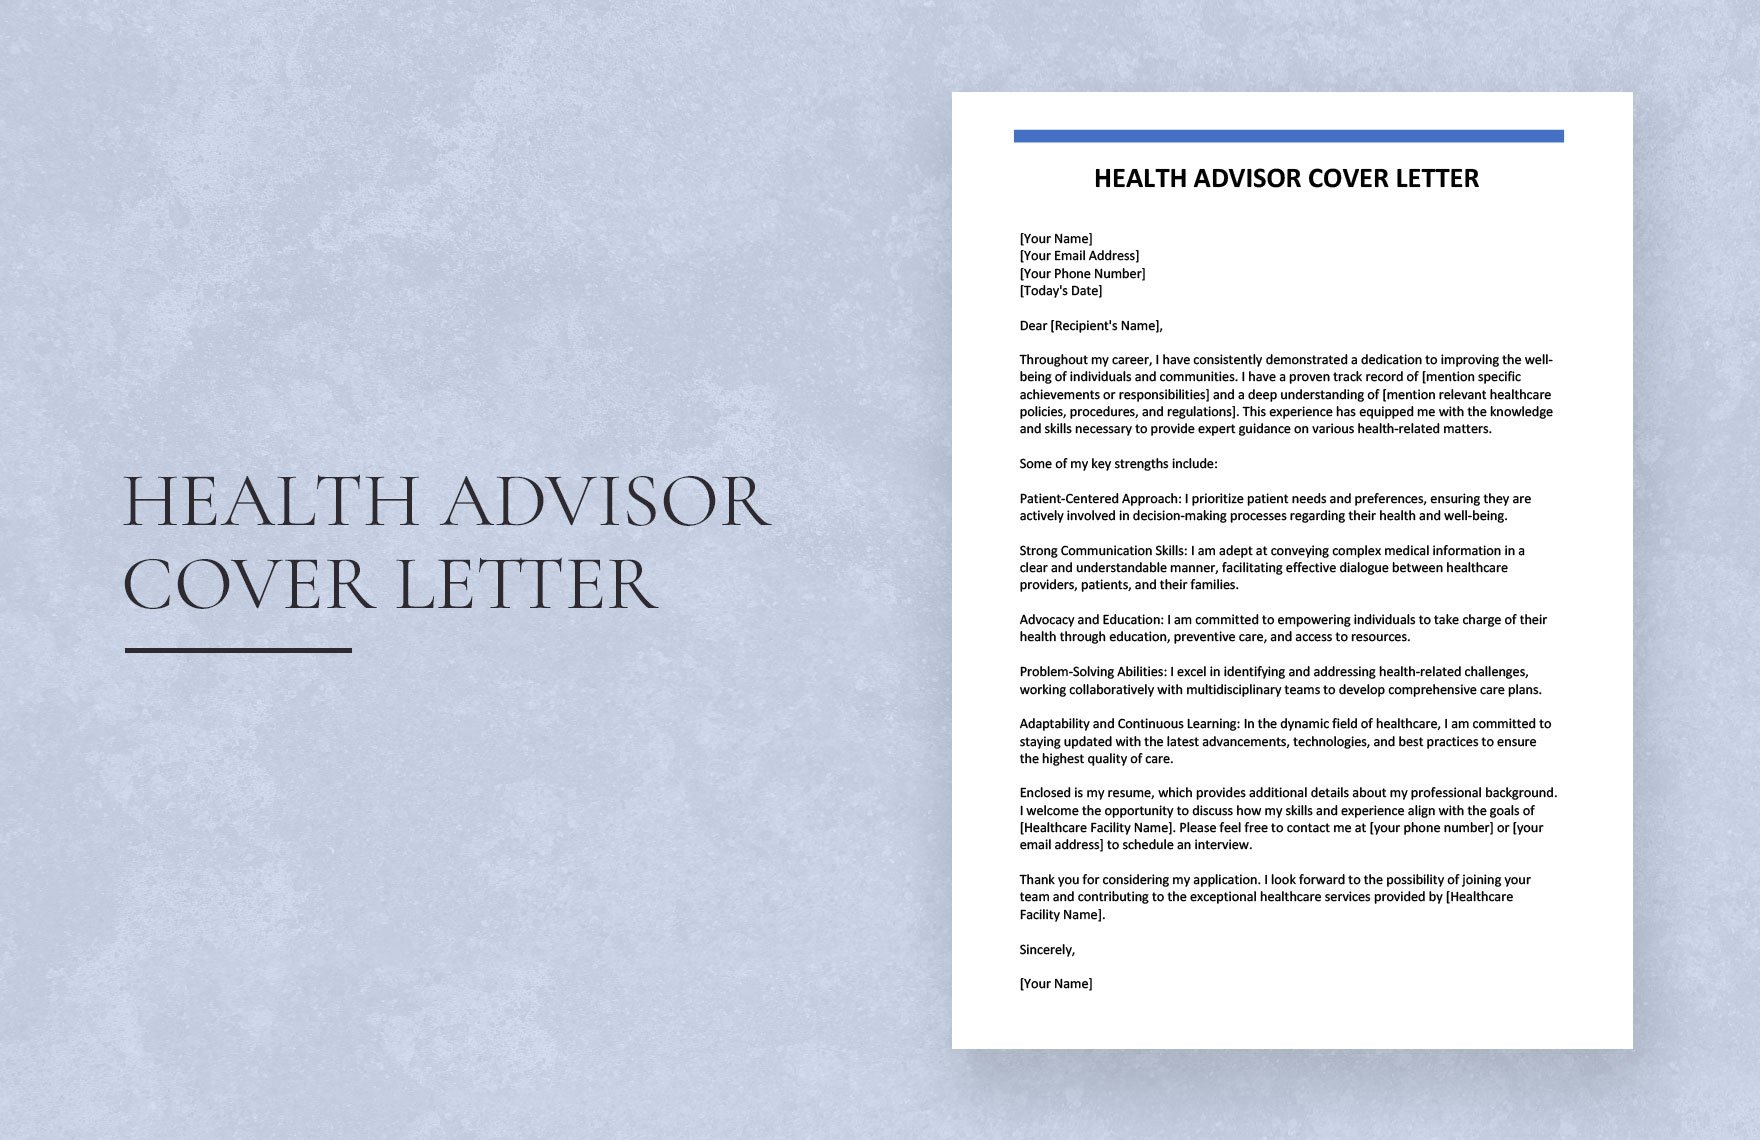 Health Advisor Cover Letter in Word, Google Docs